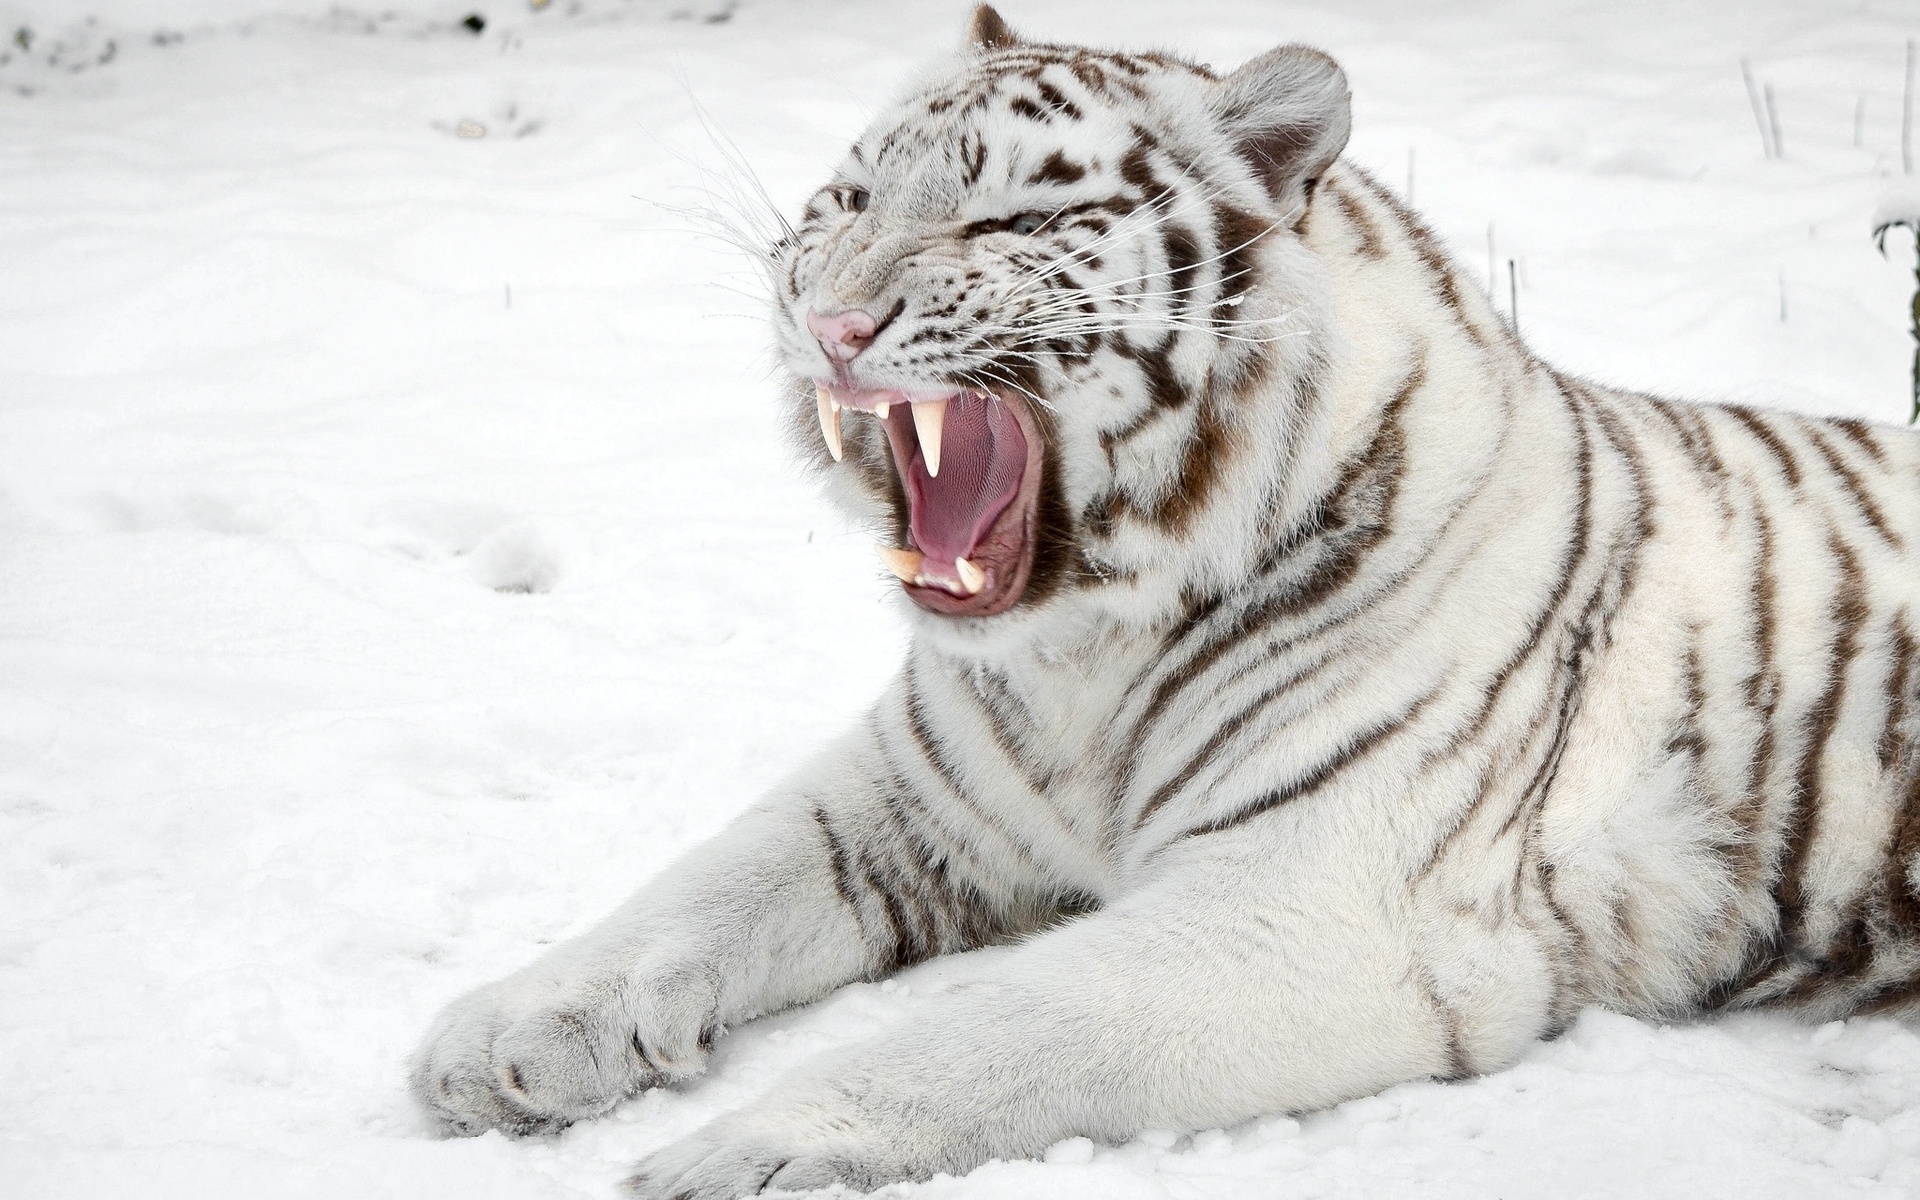 White tiger roaring